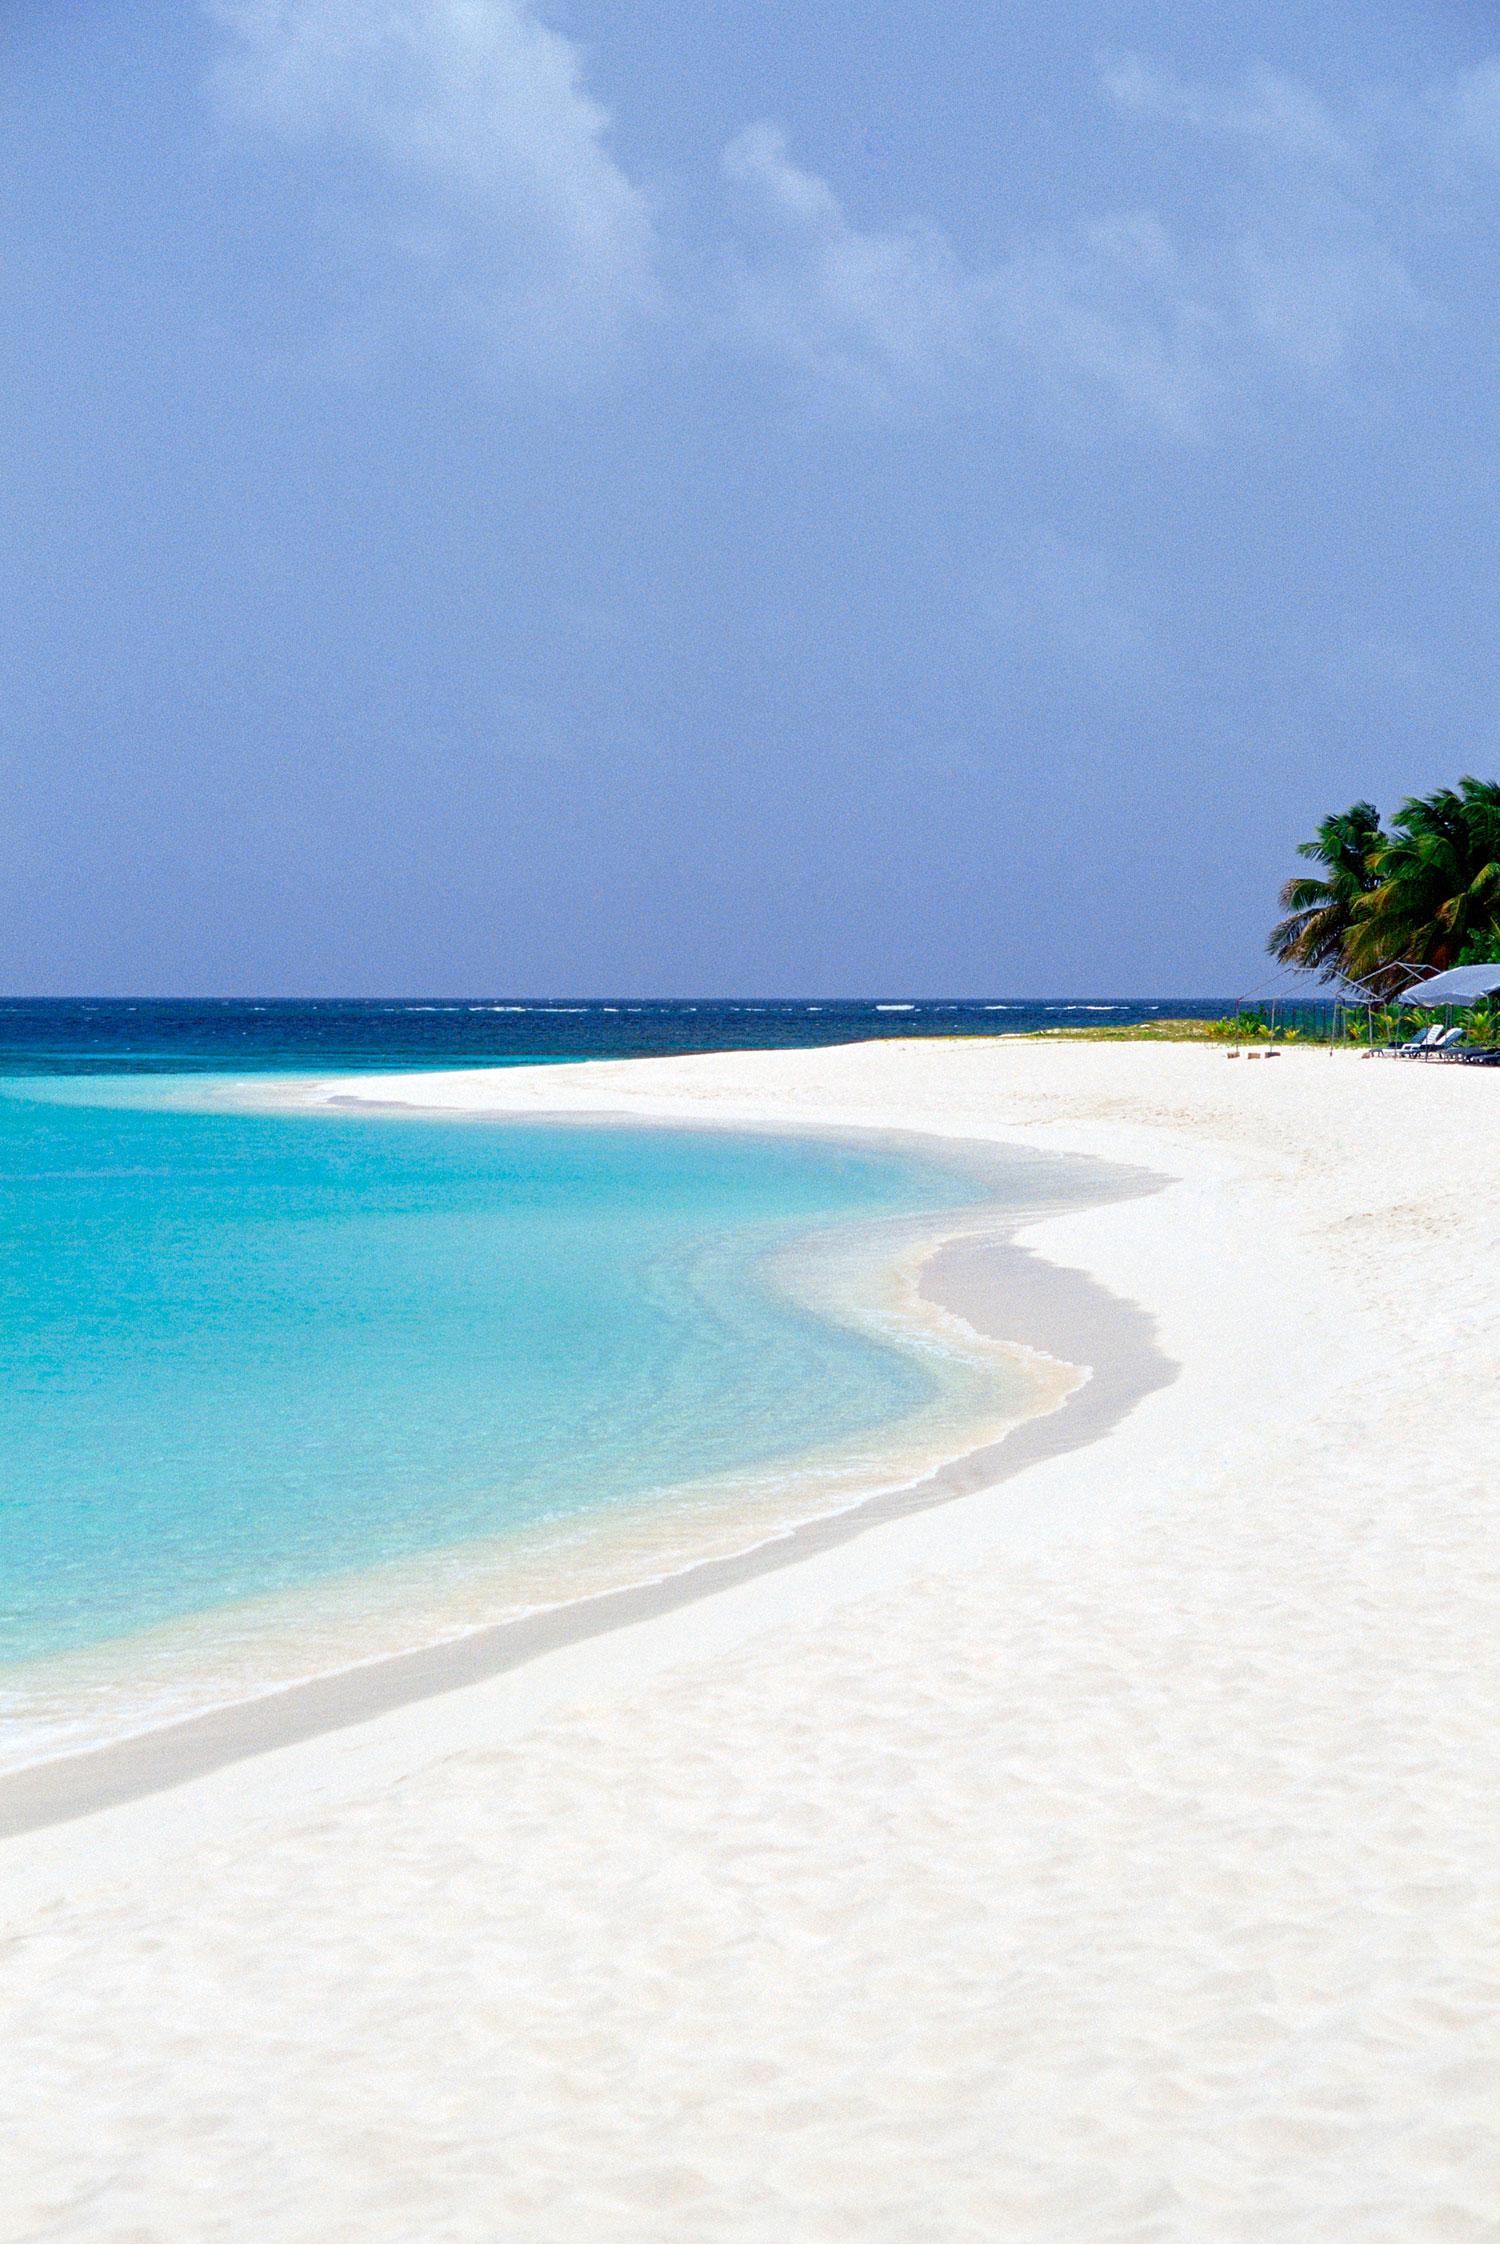 SHOAL BAY WEST, ANGUILLA Lilla Anguilla är en i pärlbandet av öar i östra delen av Karibien. Shoal Bay West ligger nära öns sydspets, intill Maundays Bay.